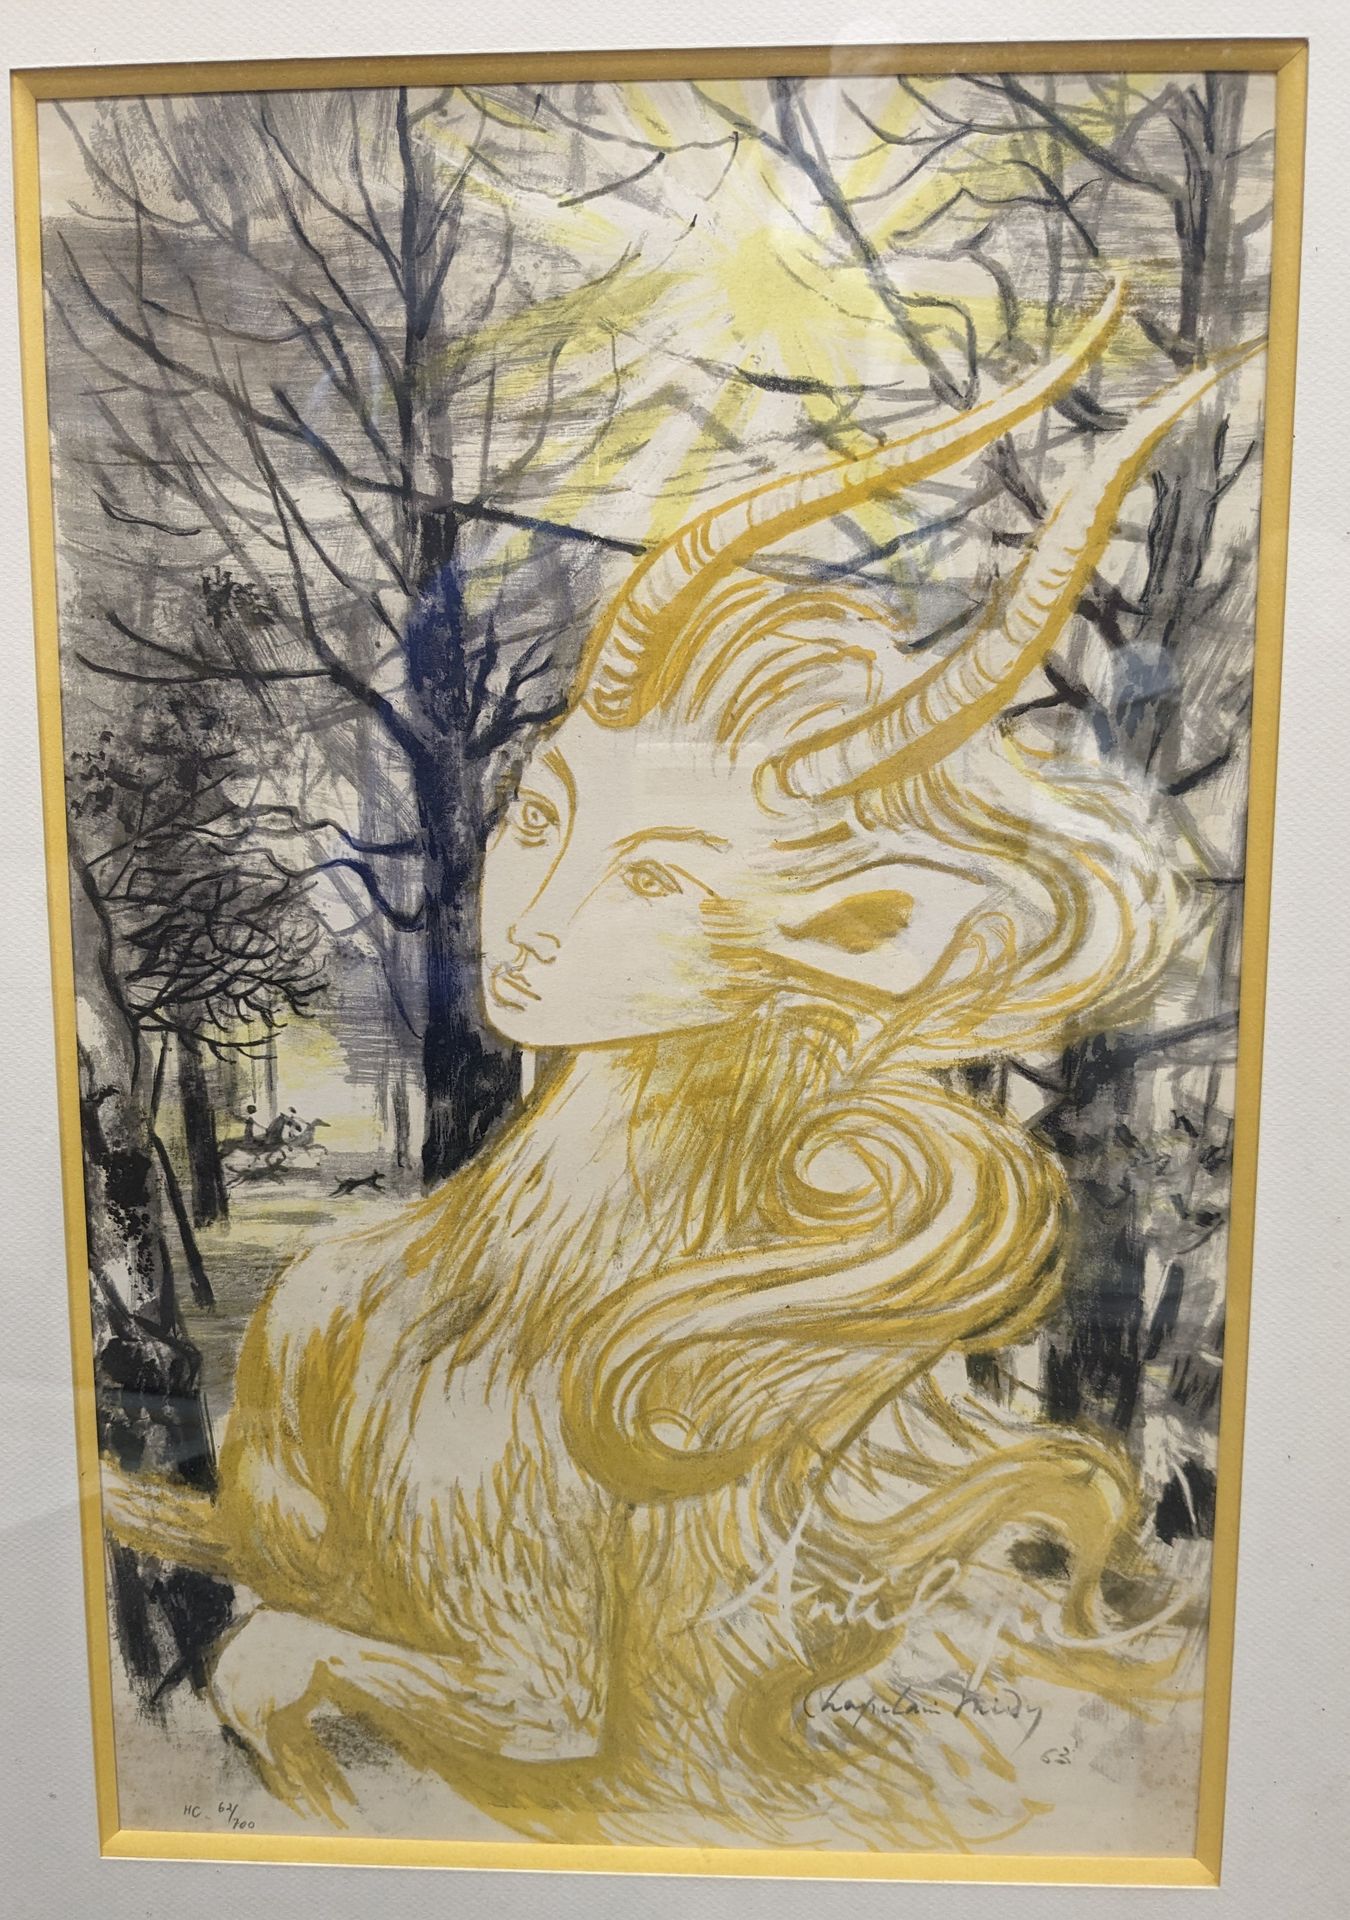 Null Chapelain Midy
Affiche lithographique 427/3000
L'Antilope du succès 1963